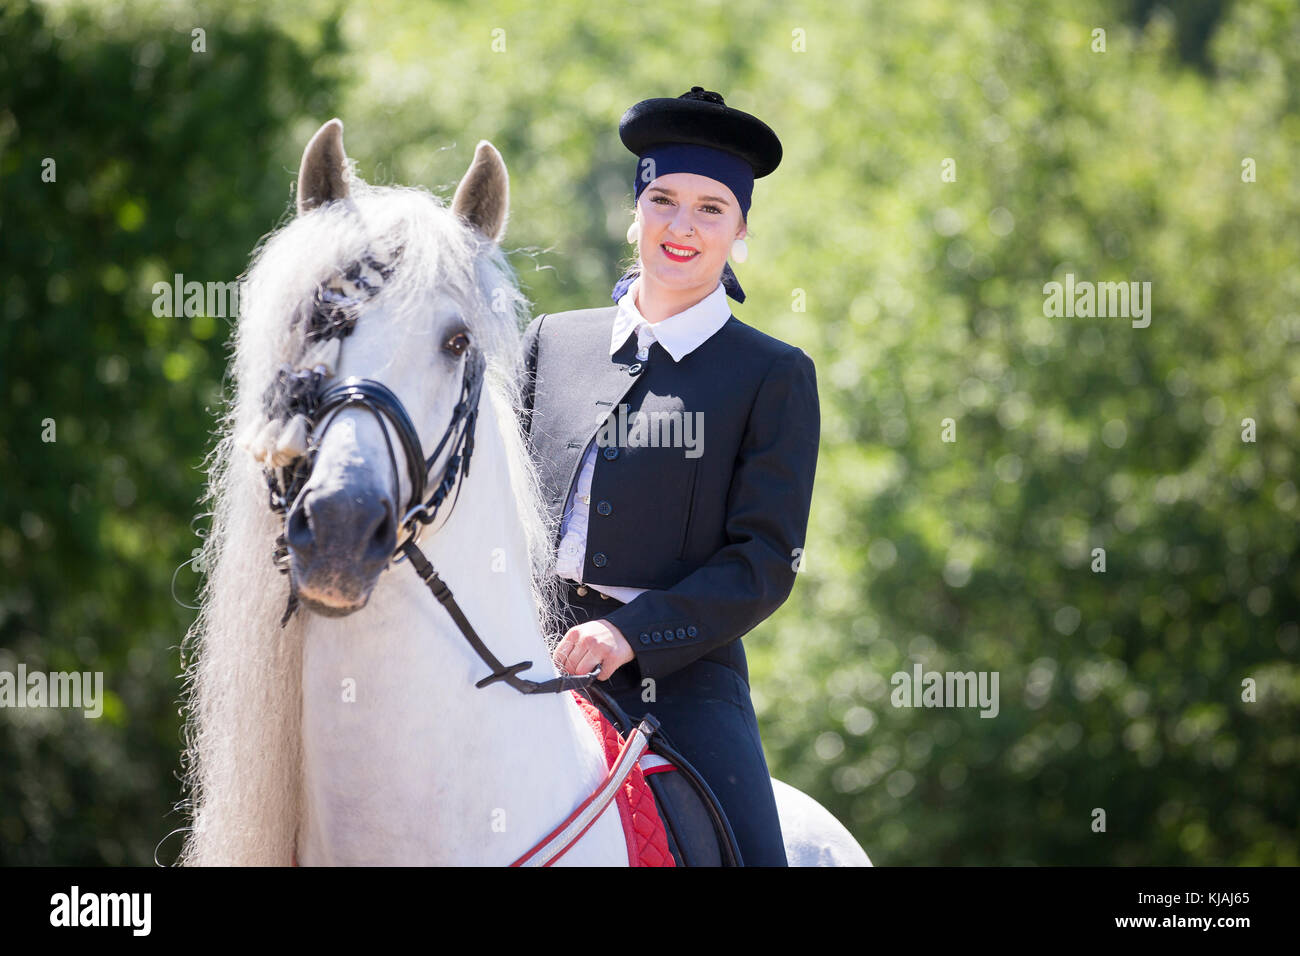 Reine Spanische Pferd, Andalusische. Reiter in traditioneller Kleidung auf graue Hengst auf einem Reitplatz. Österreich Stockfoto